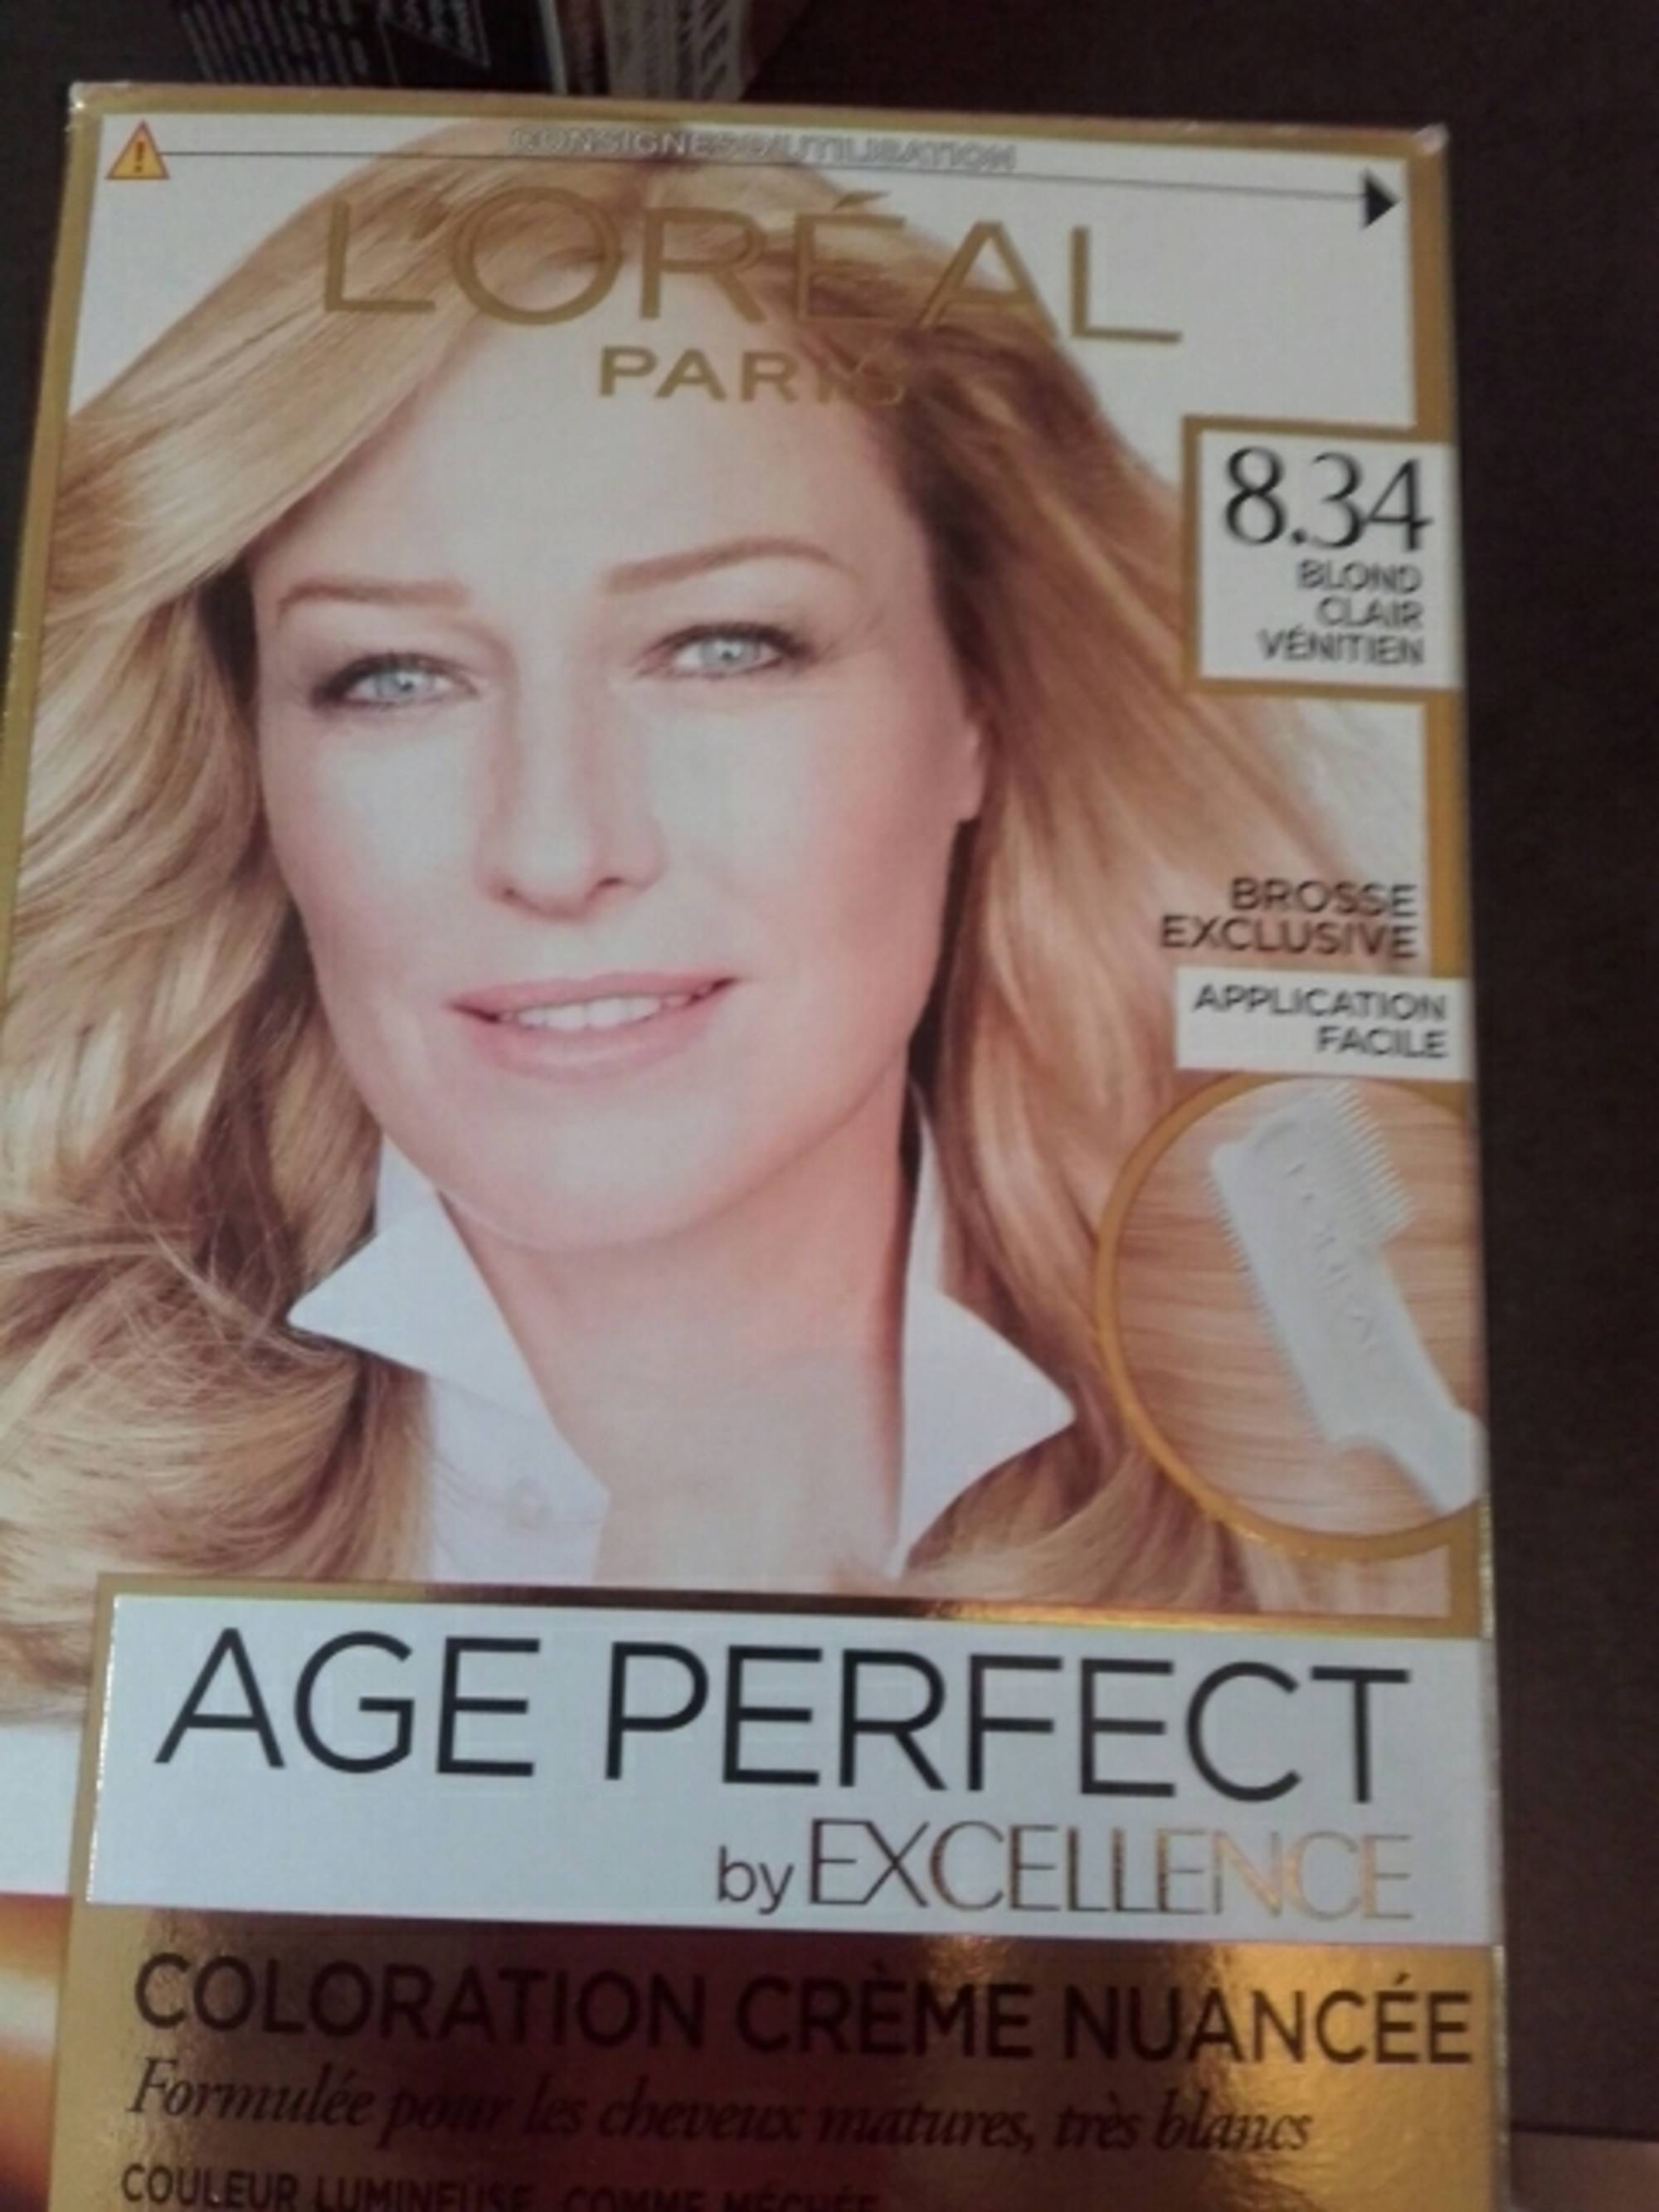 L'ORÉAL - Age perfect - Coloration crème nuancée 8.34 blond clair vénitien